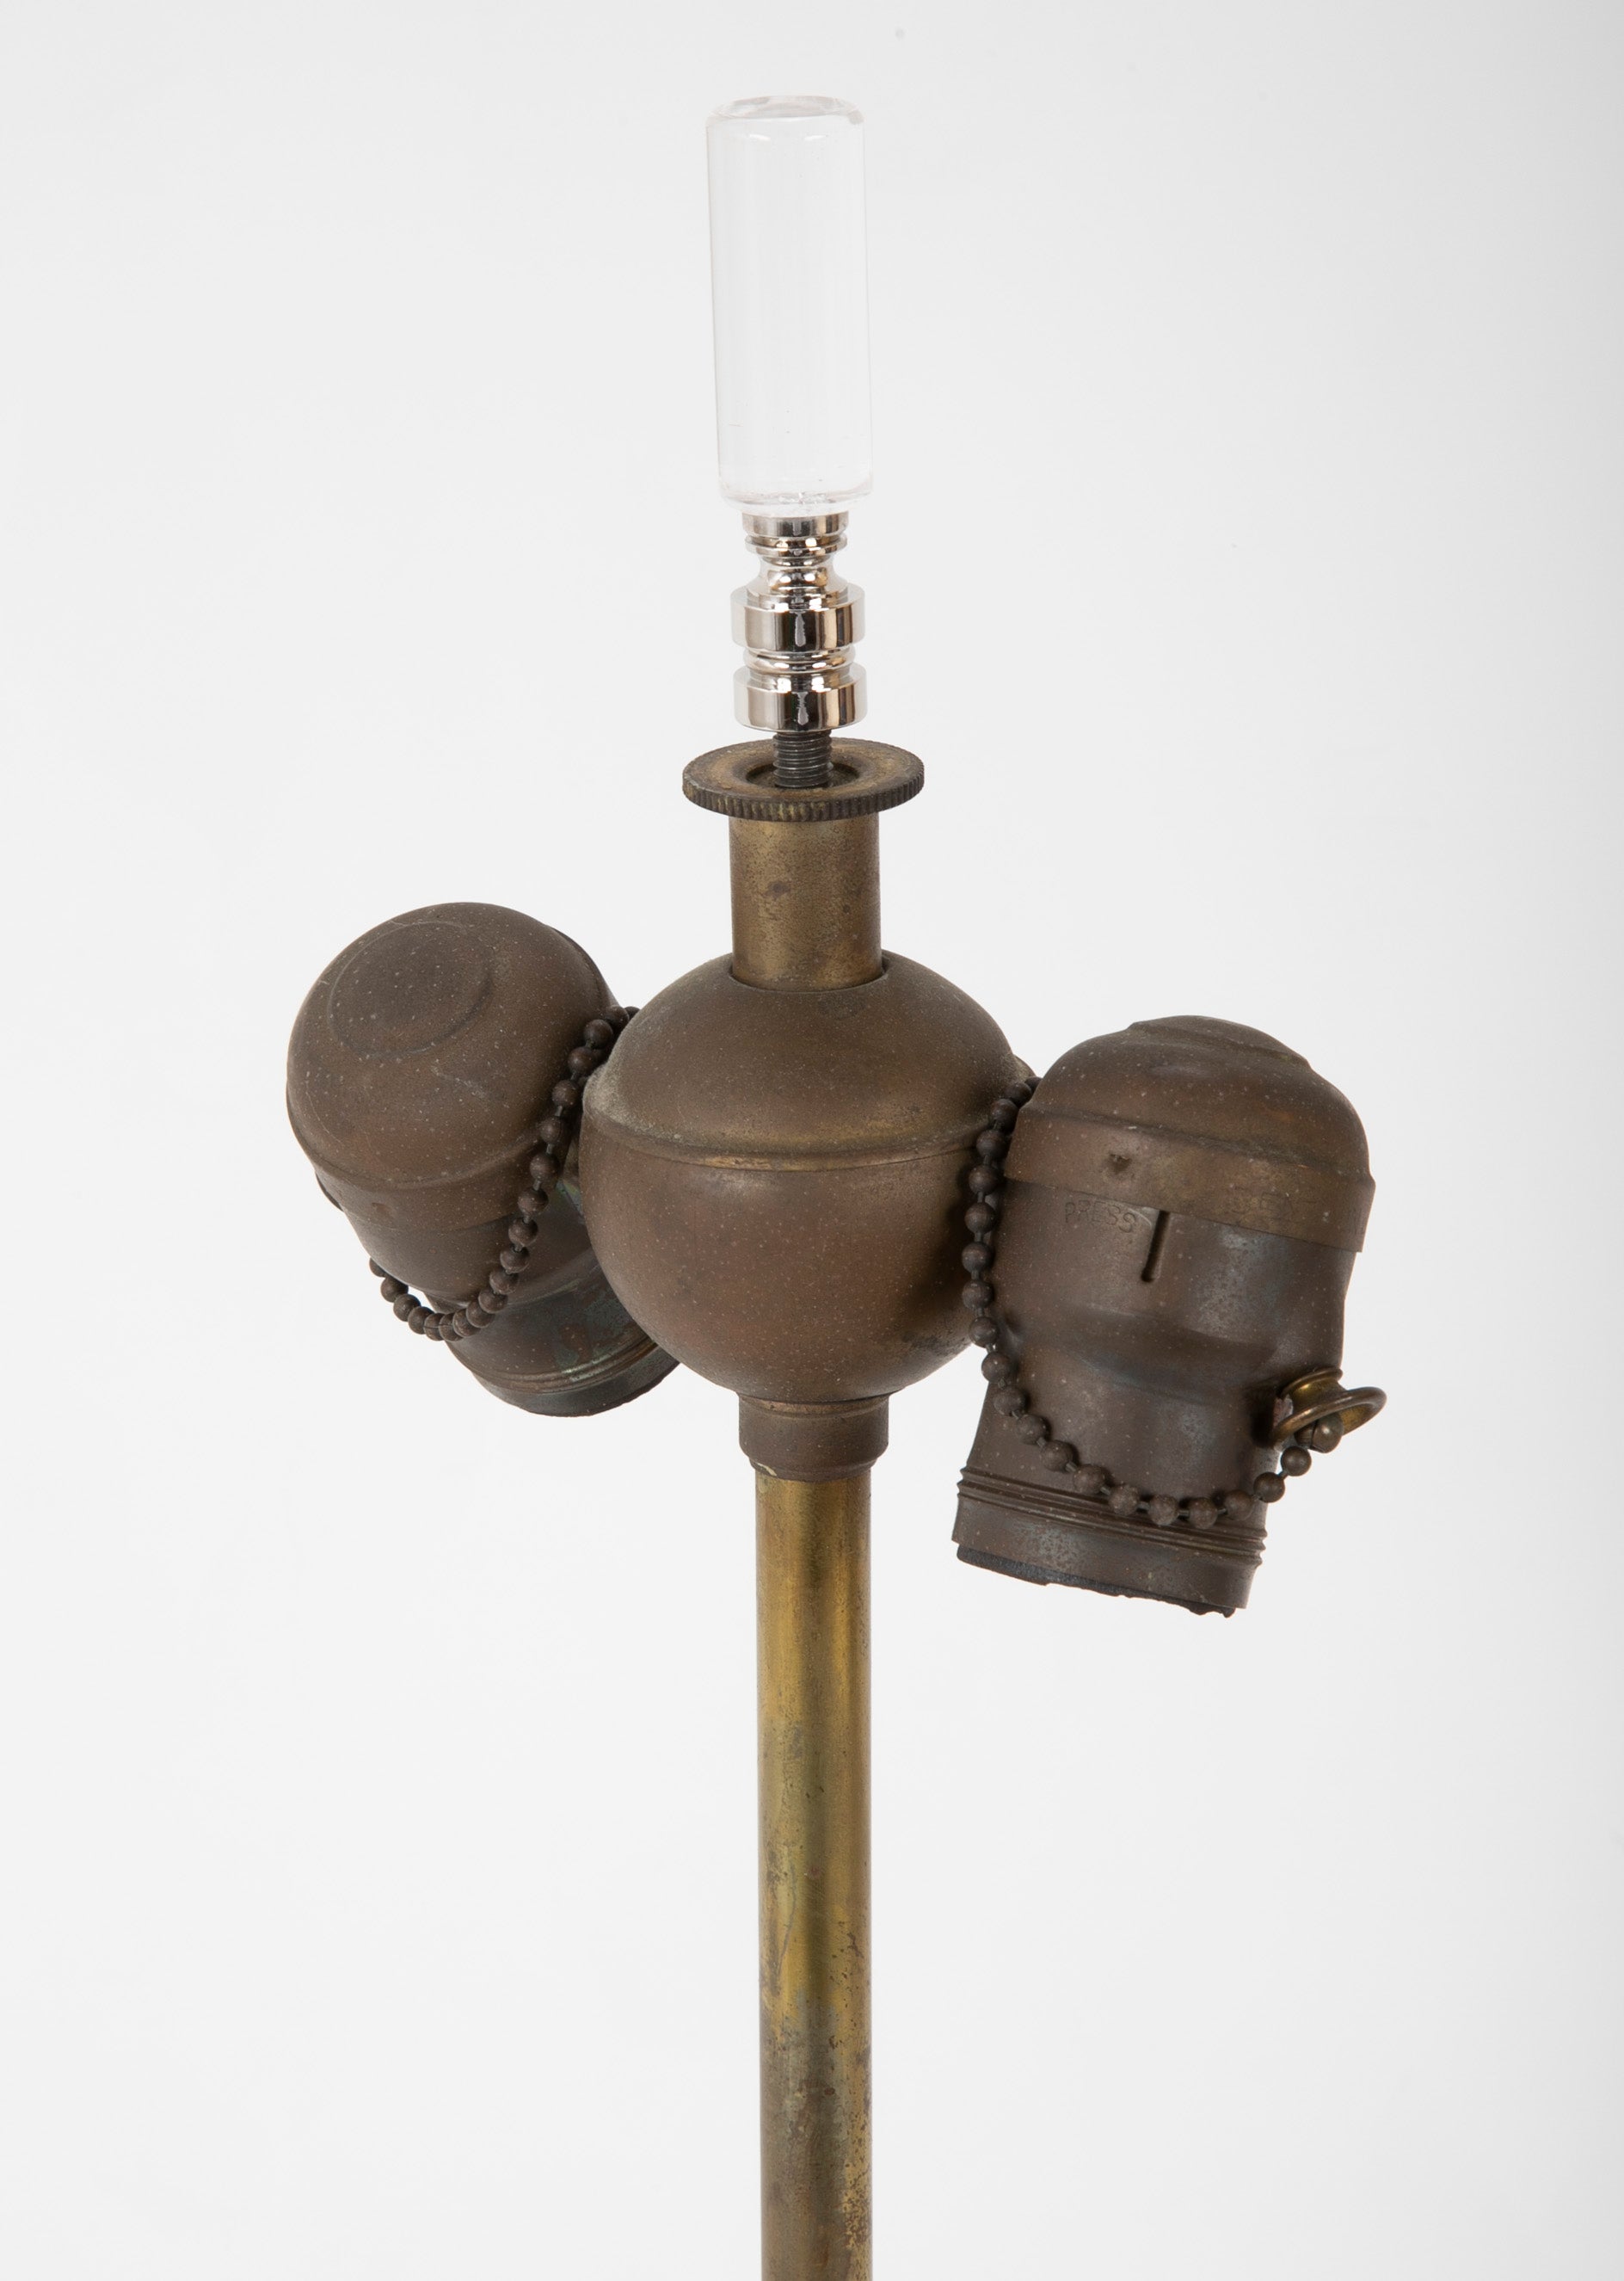 Rene Lalique "Marissa" Vase now a Lamp